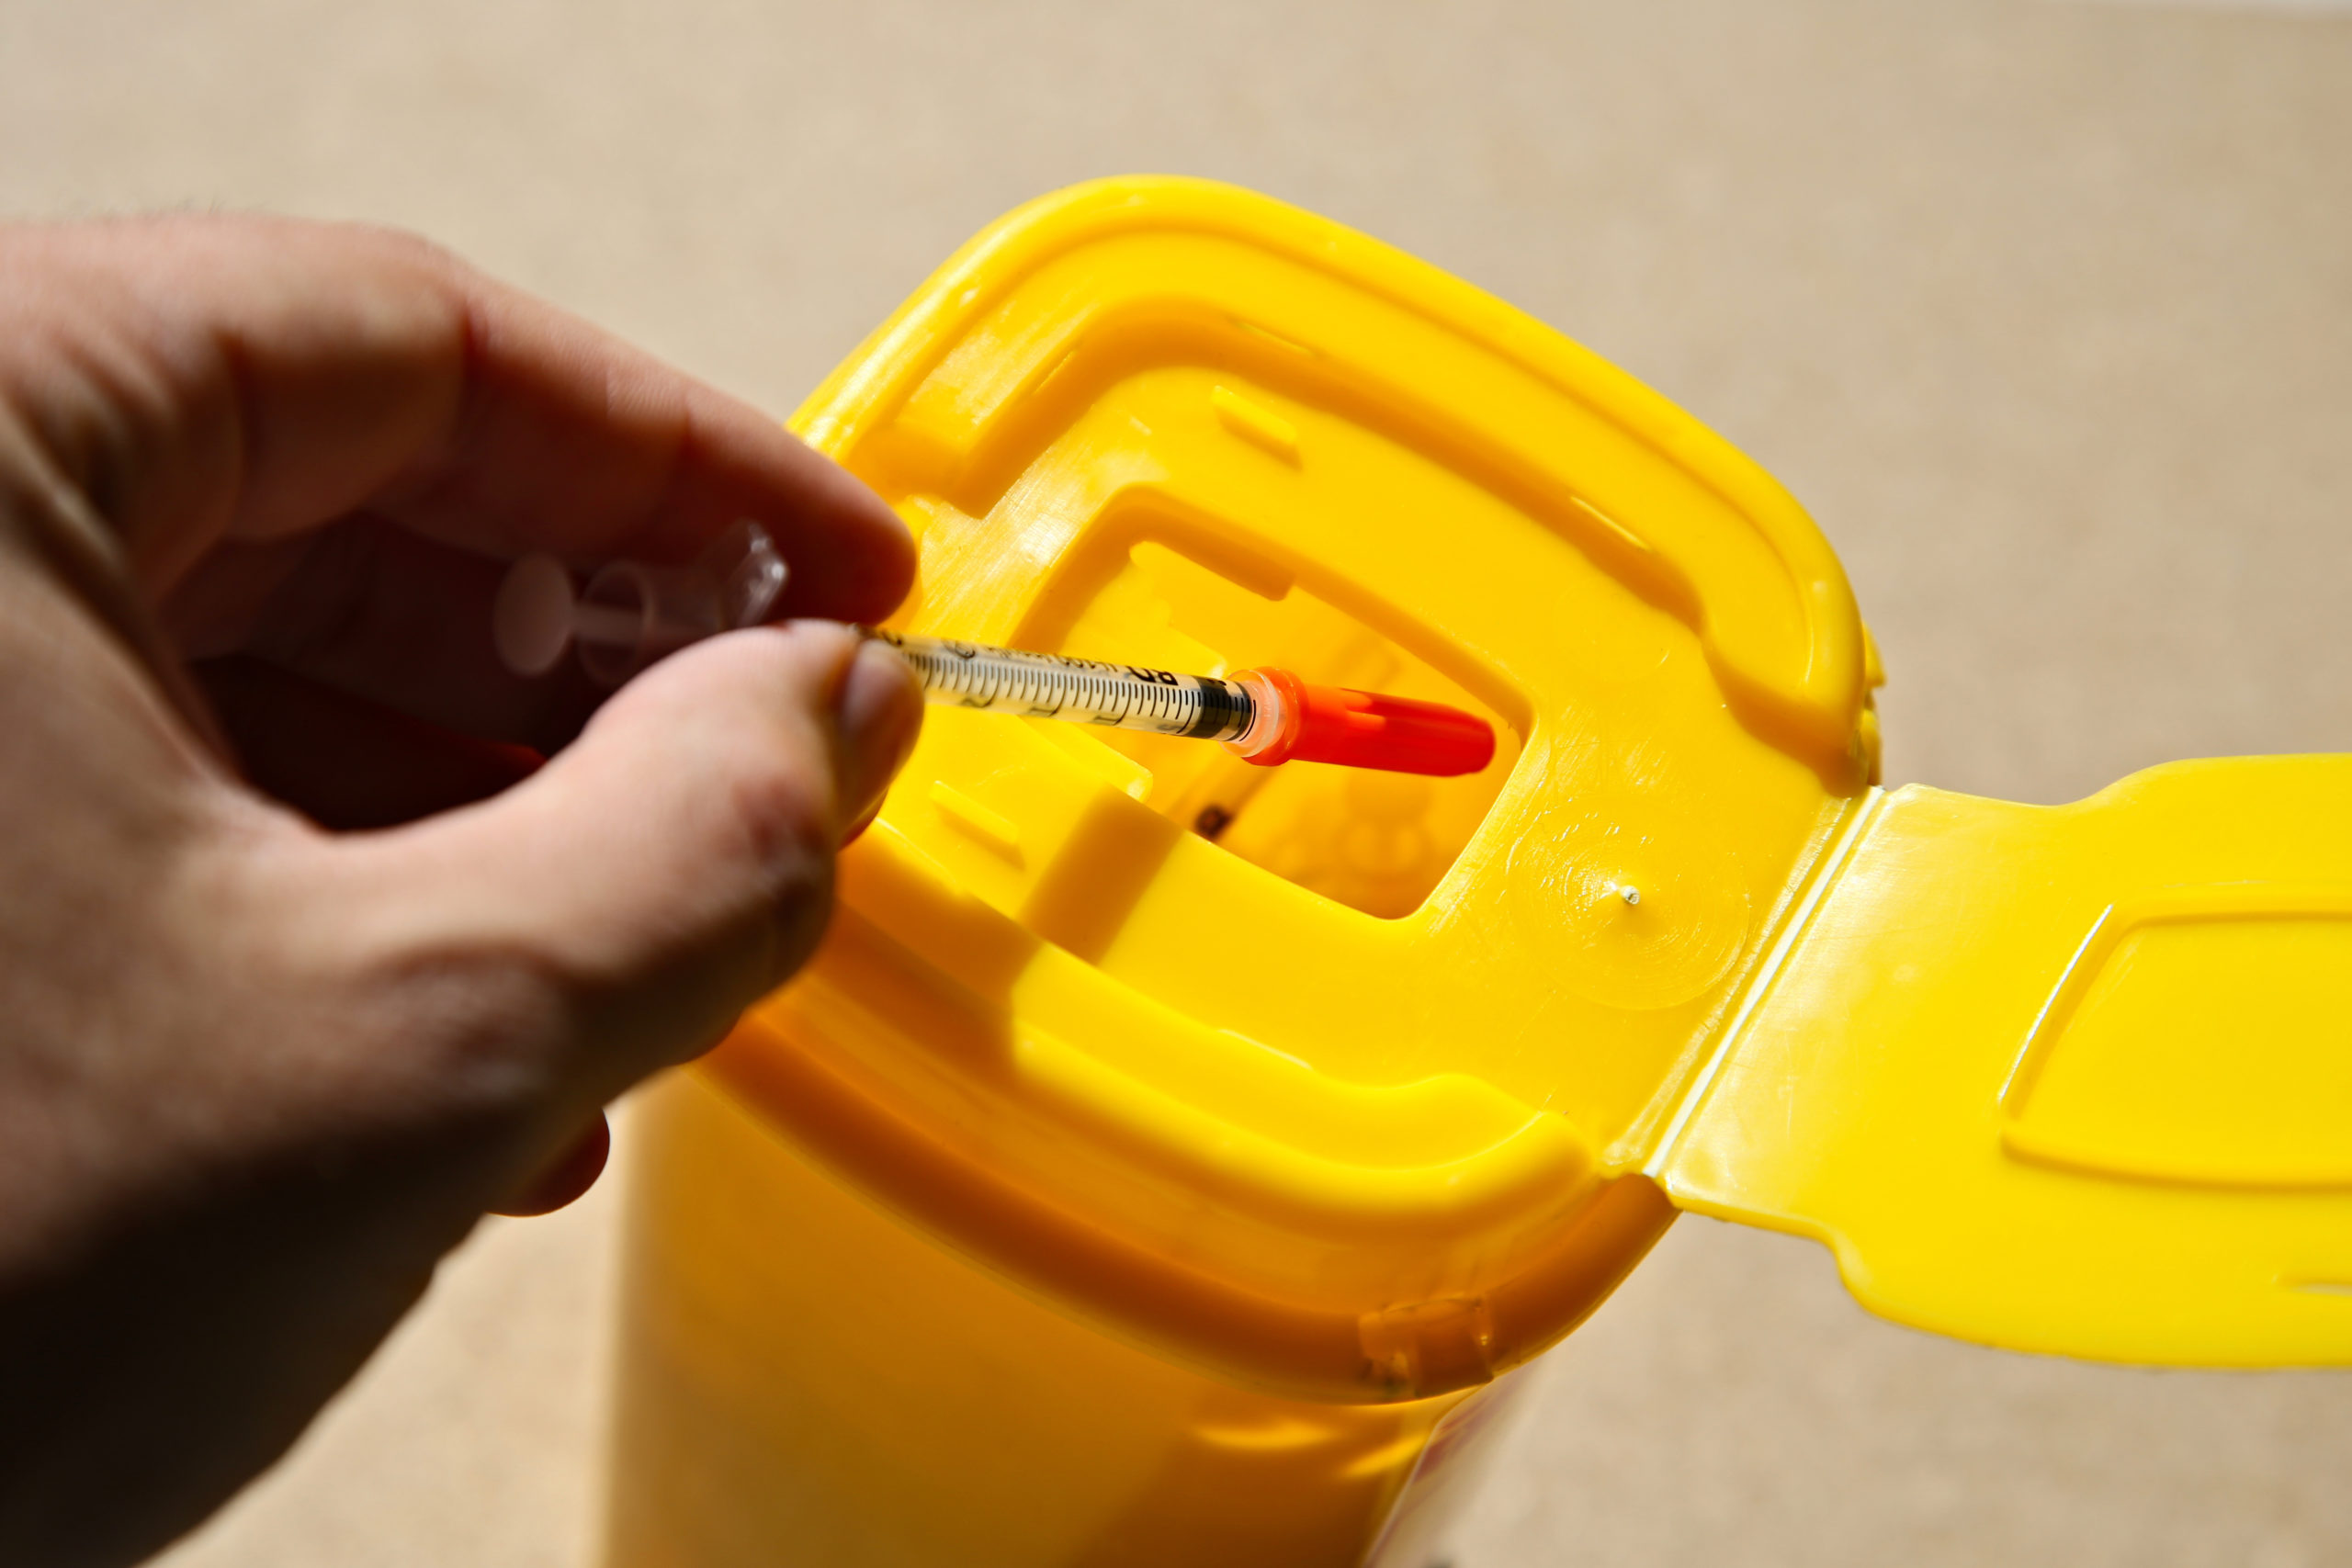 Needle Syringe Program